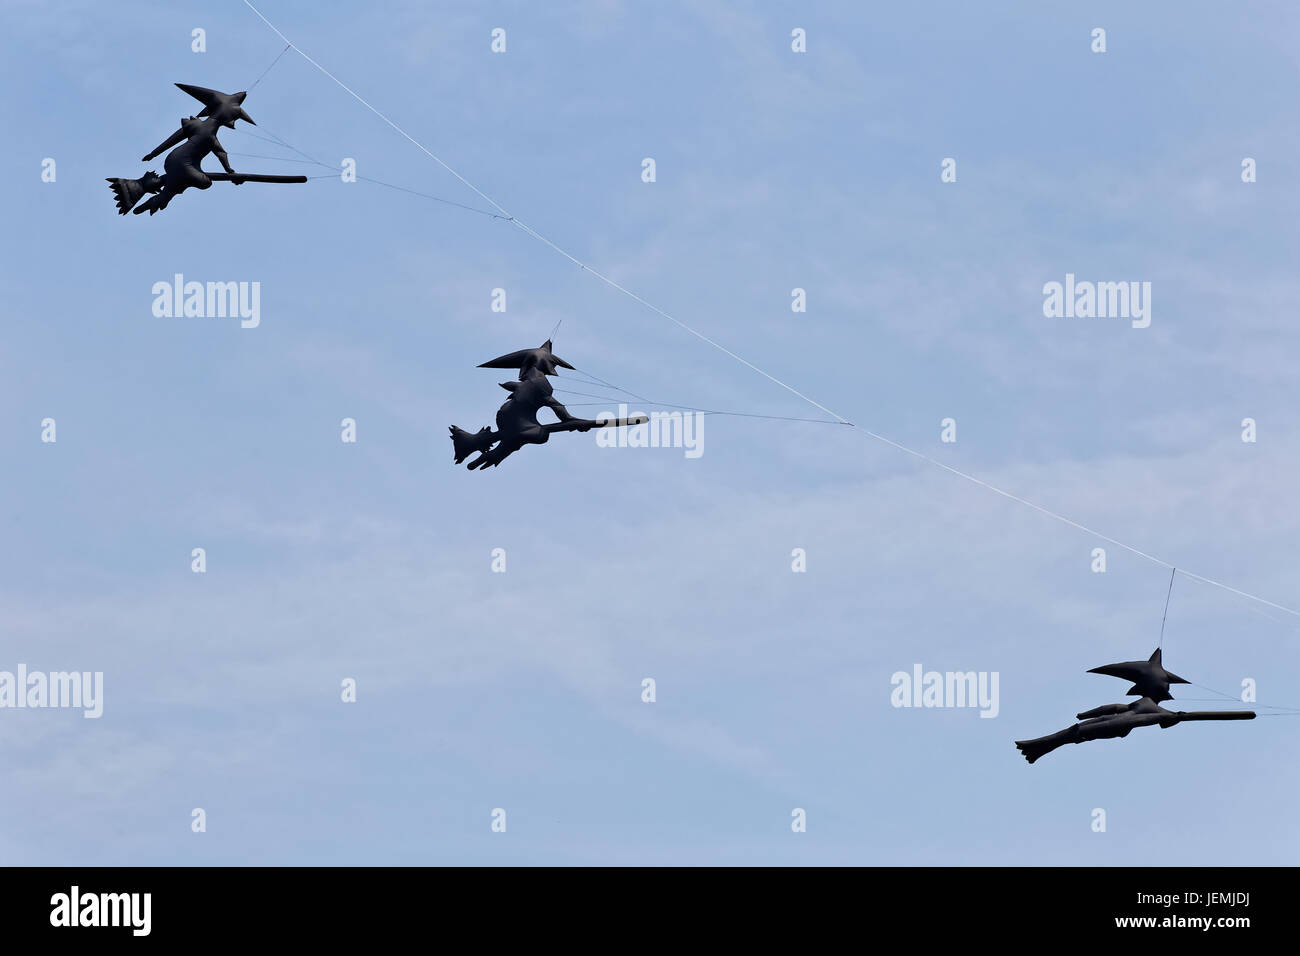 fliegende Drachen, drei schwarze Hexen auf Besen Stockfoto